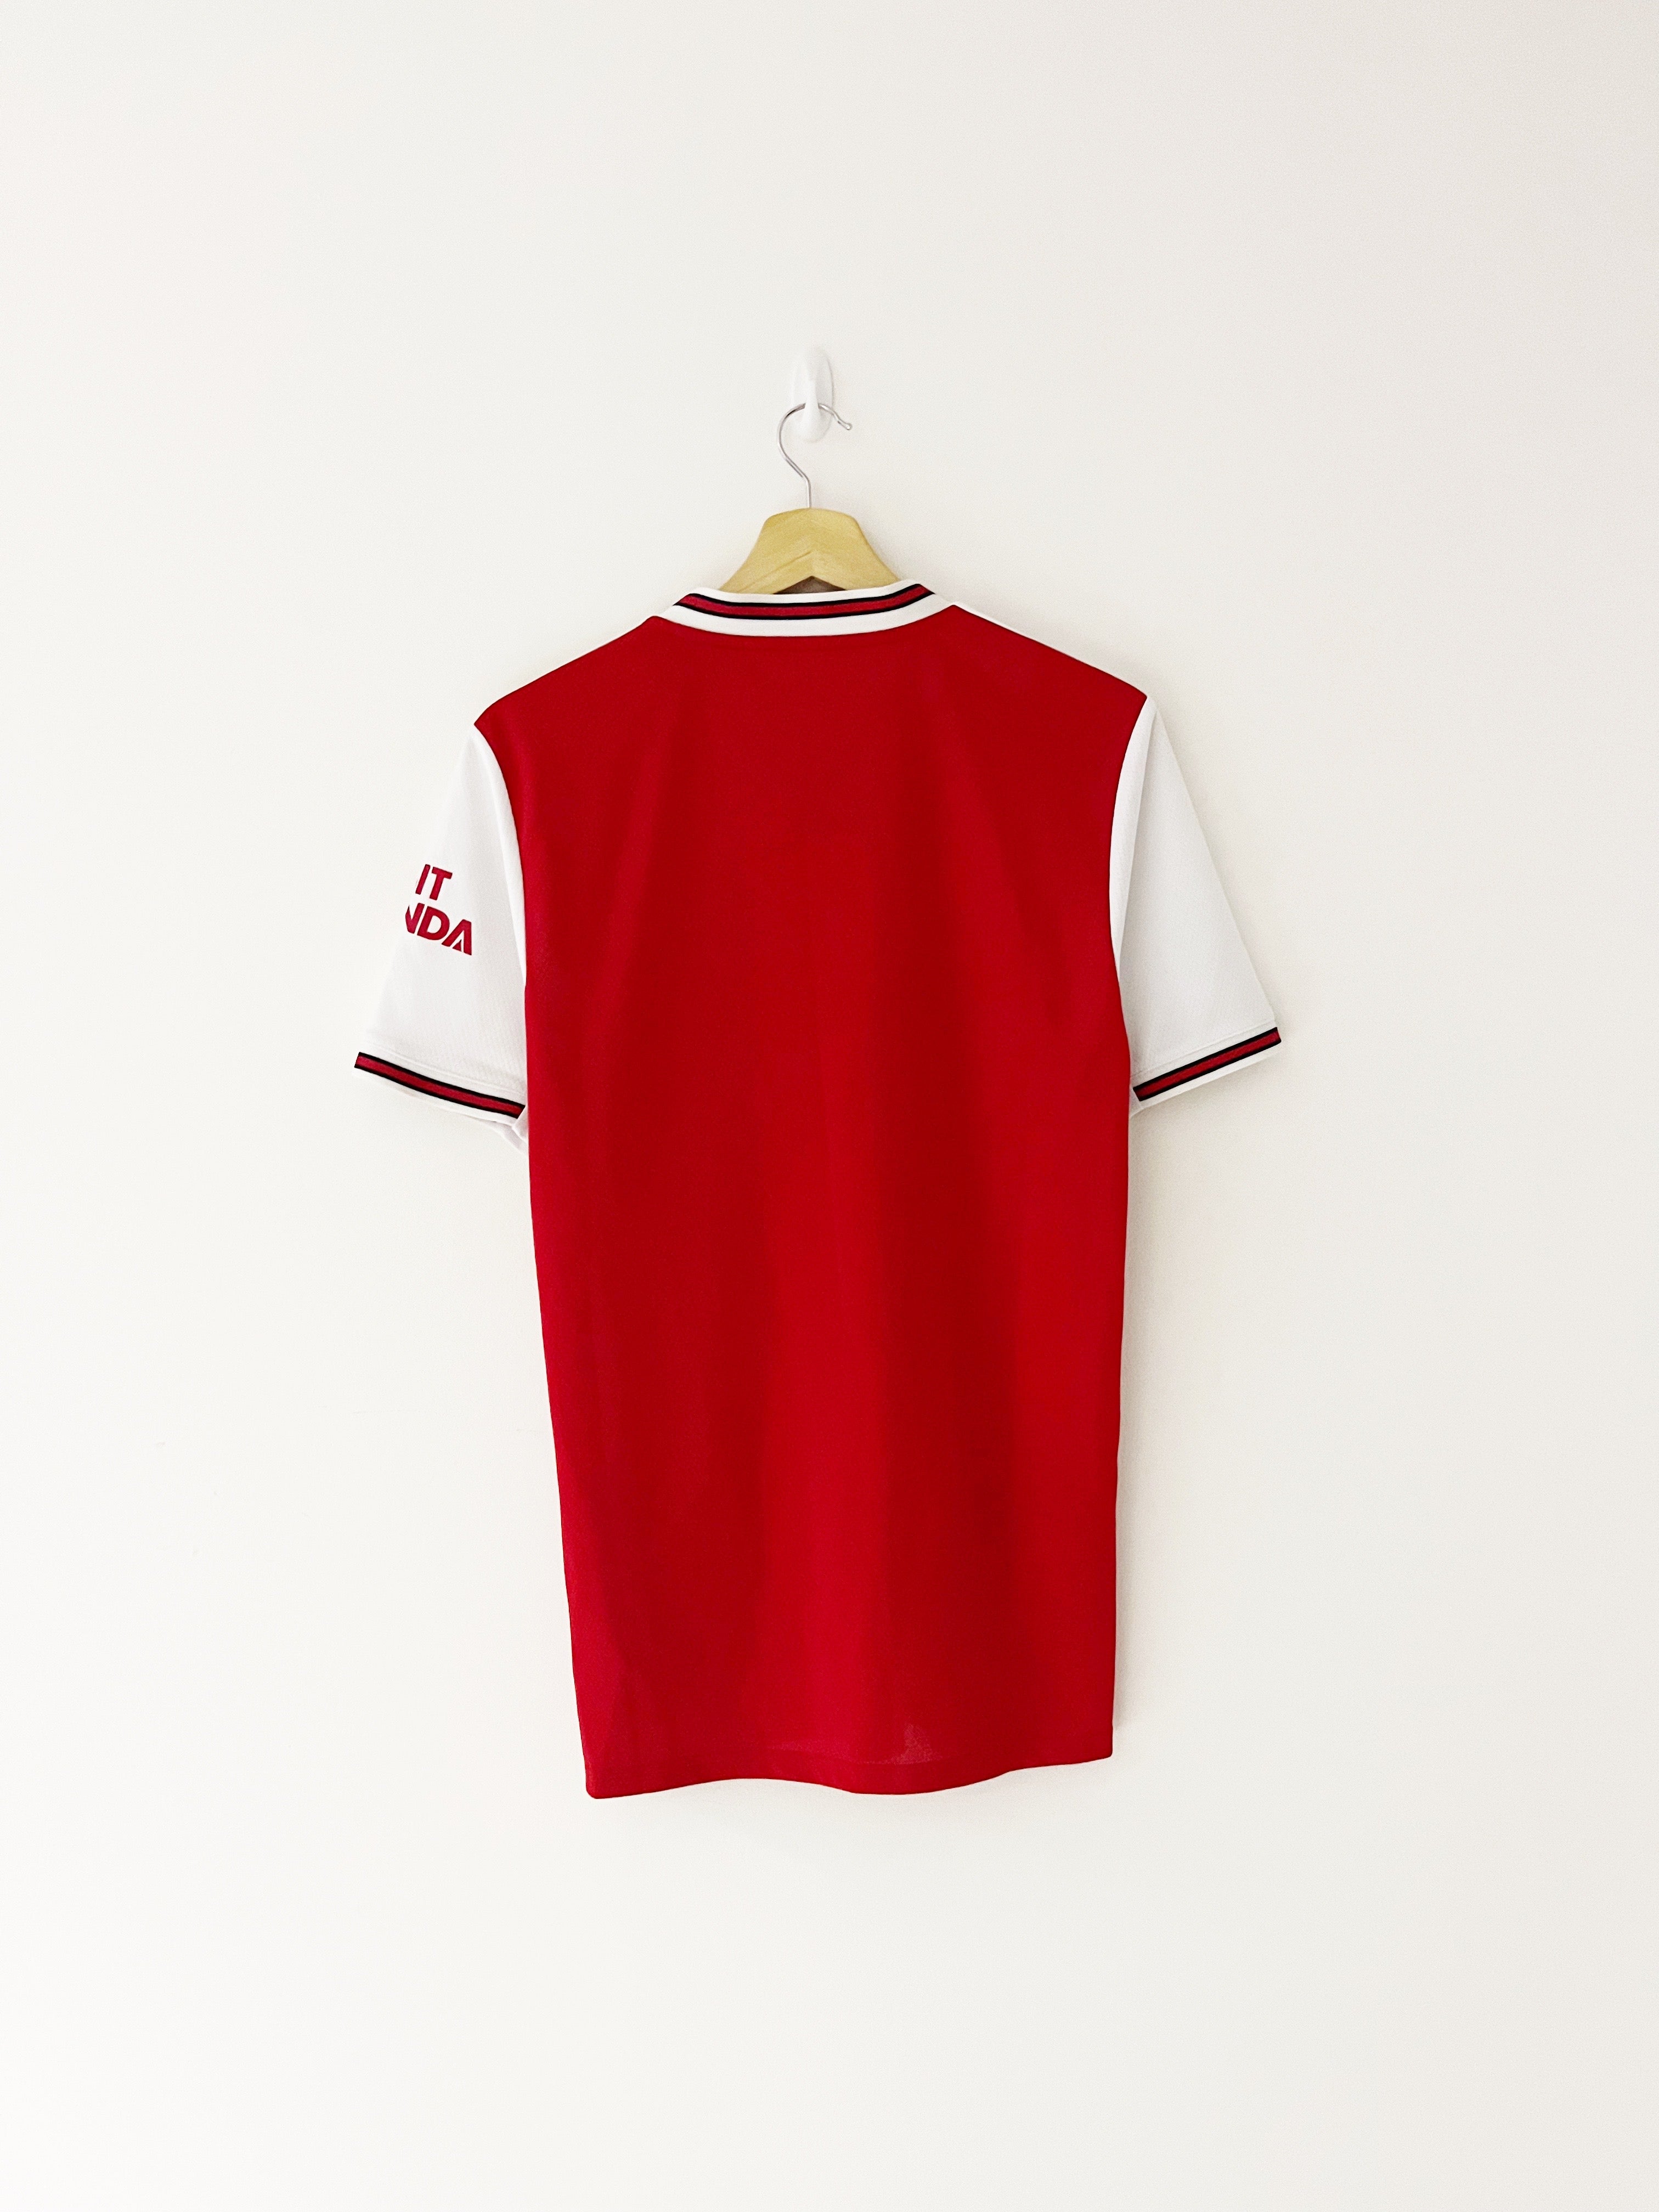 2019/20 Arsenal Home Shirt (S) 9/10